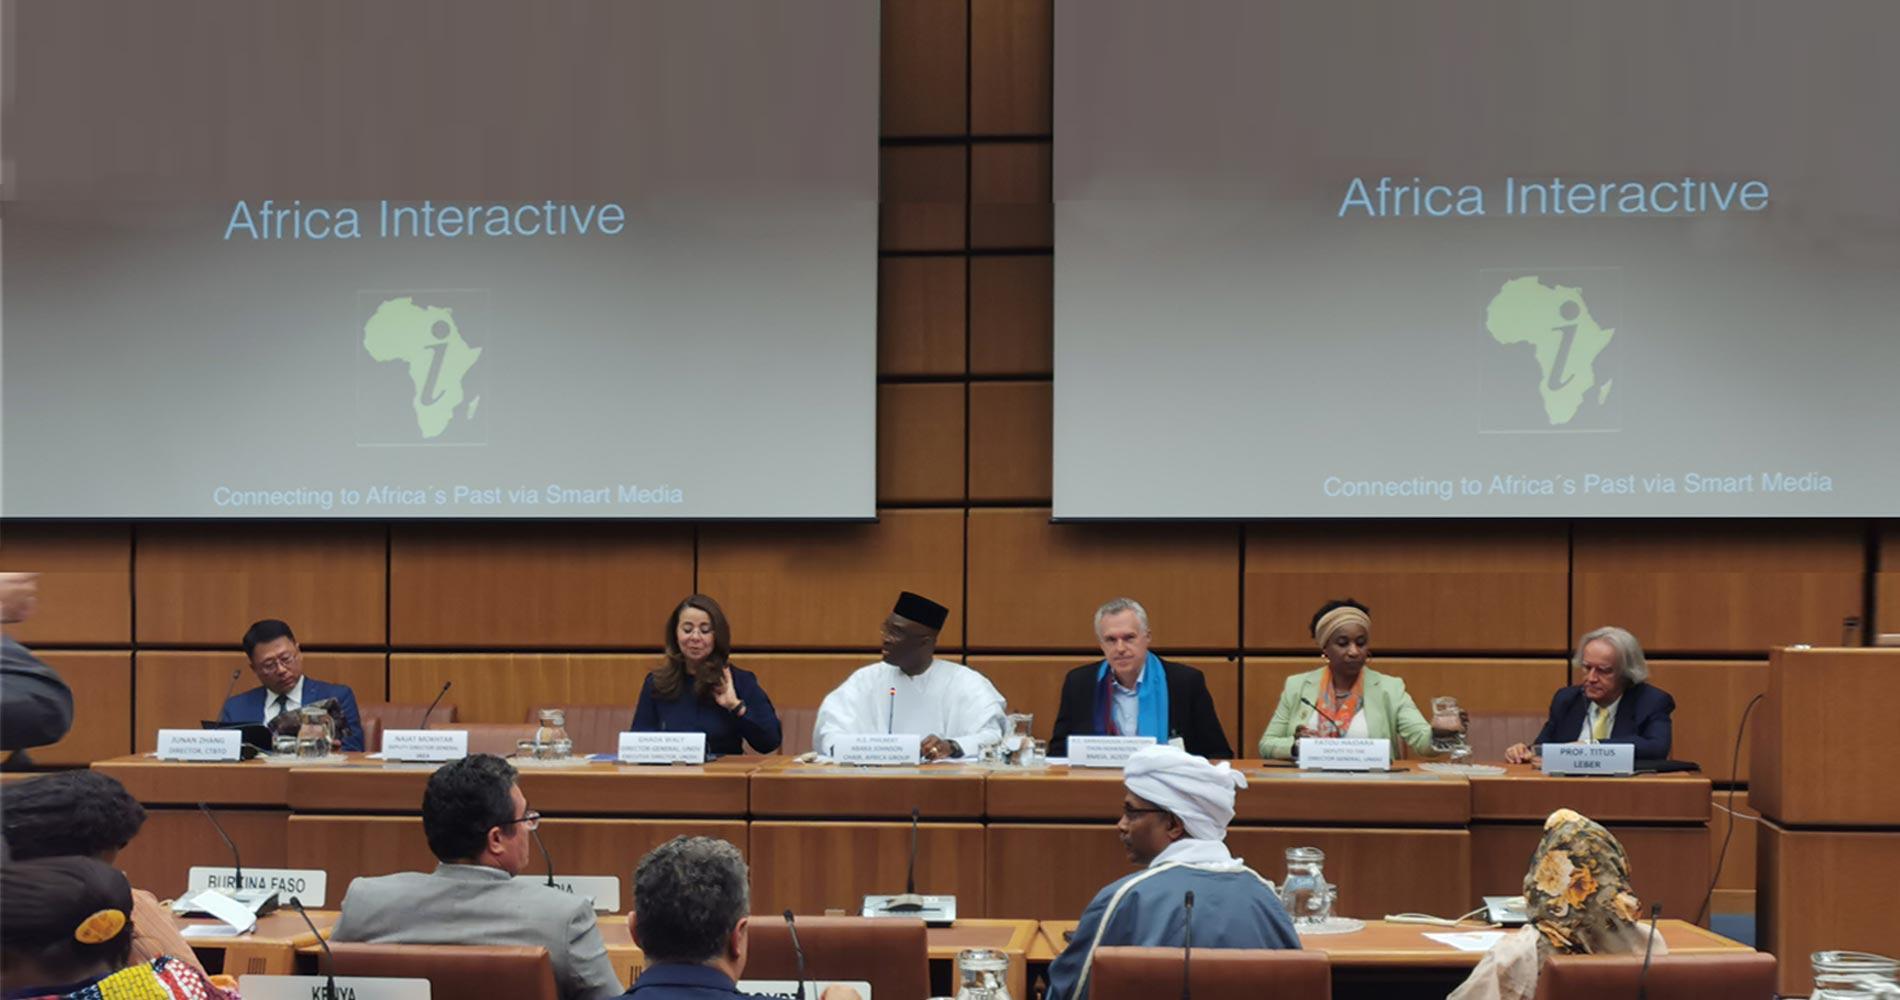 联合国非洲日庆祝活动在维也纳推出“非洲互动”项目